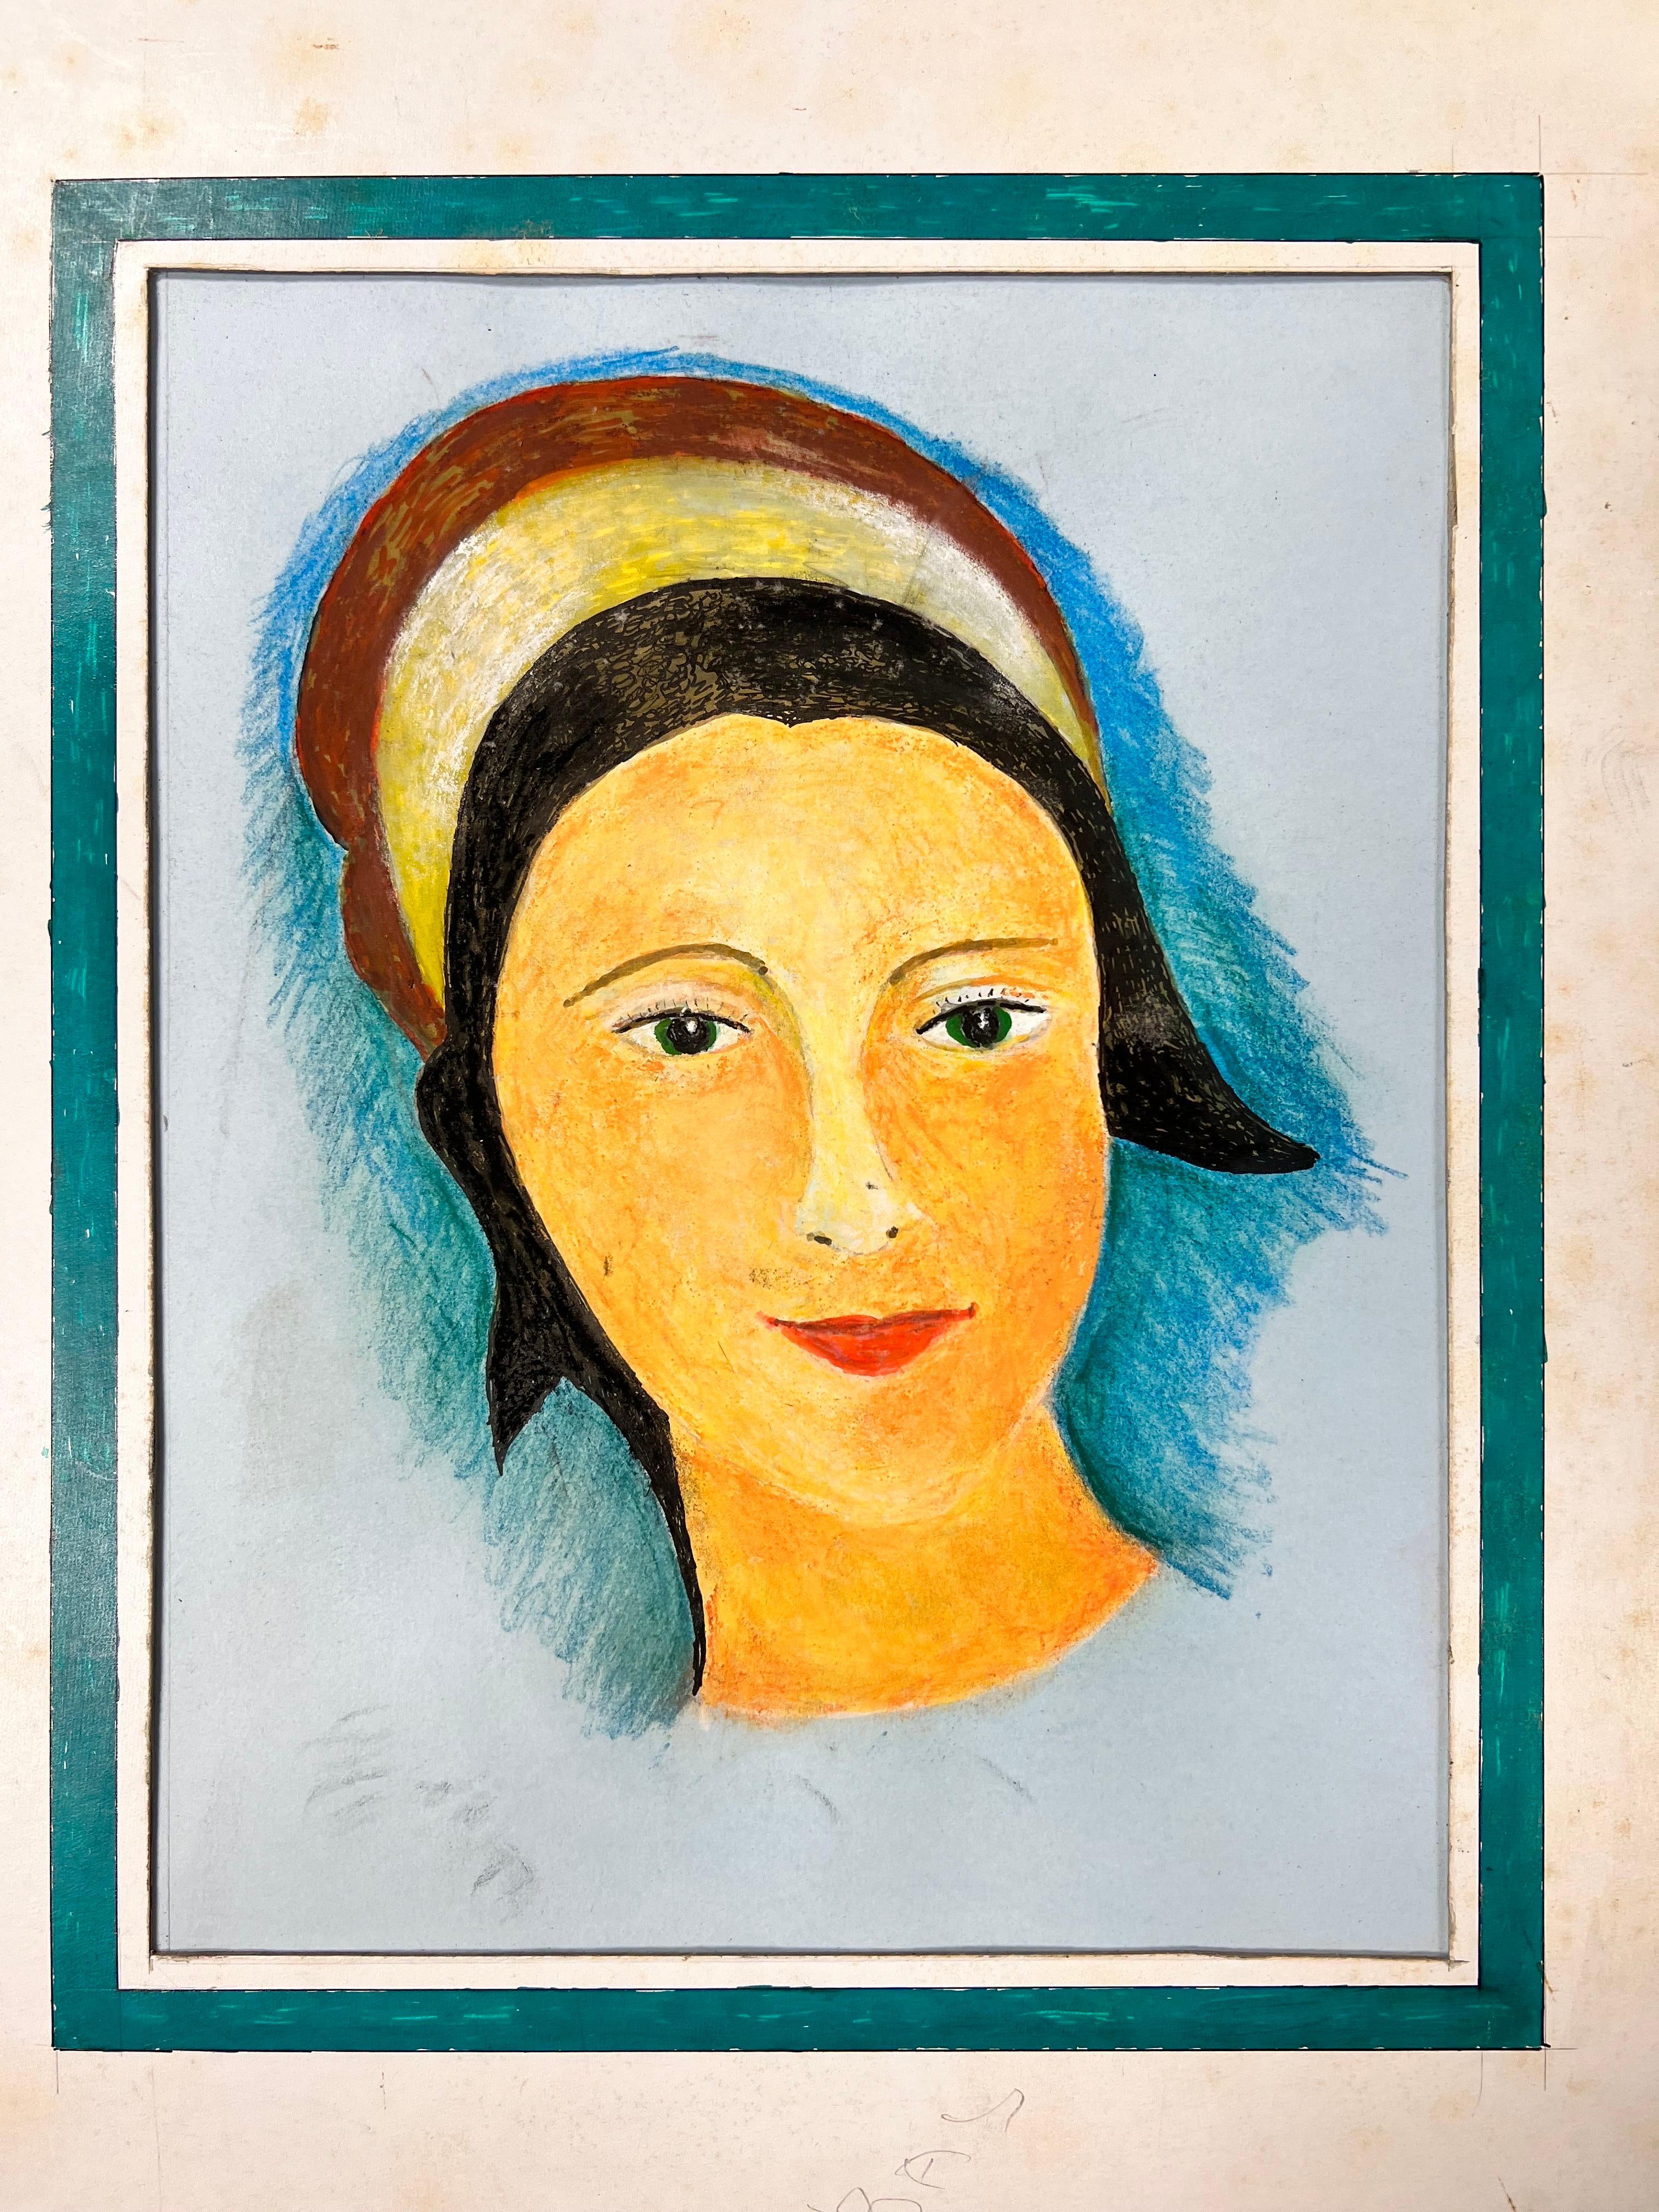 Peinture moderniste/ cubiste des années 1950 - Portrait d'une jeune fille aux yeux verts - Moderne Art par Bernard Labbe